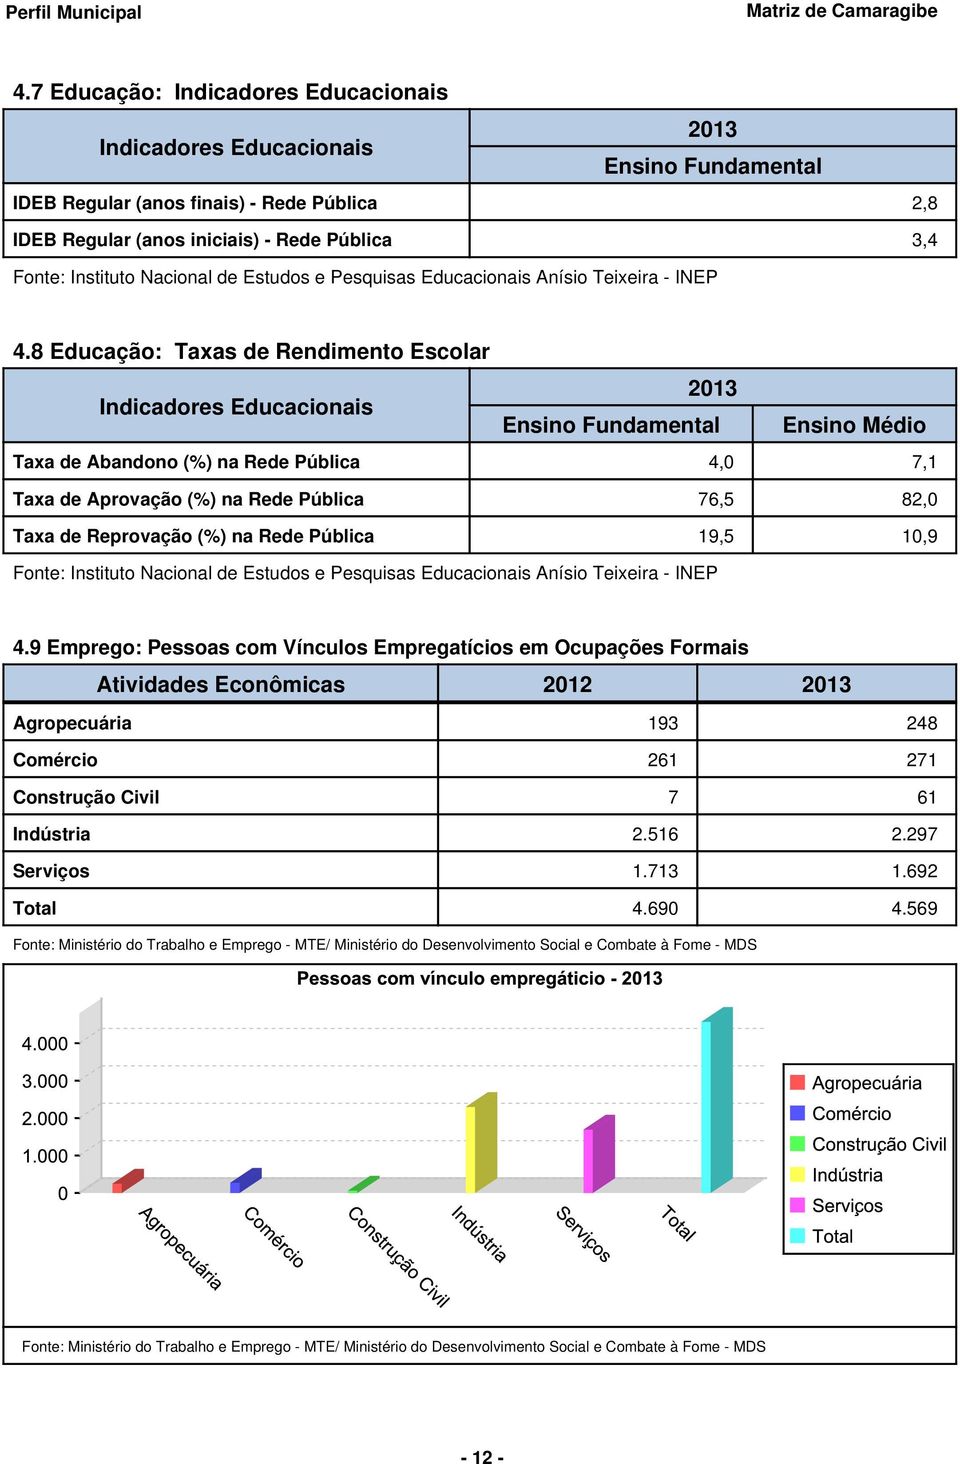 8 Educação: Taxas de Rendimento Escolar Indicadores Educacionais 2013 Ensino Fundamental Ensino Médio Taxa de Abandono (%) na Rede Pública 4,0 7,1 Taxa de Aprovação (%) na Rede Pública 76,5 82,0 Taxa